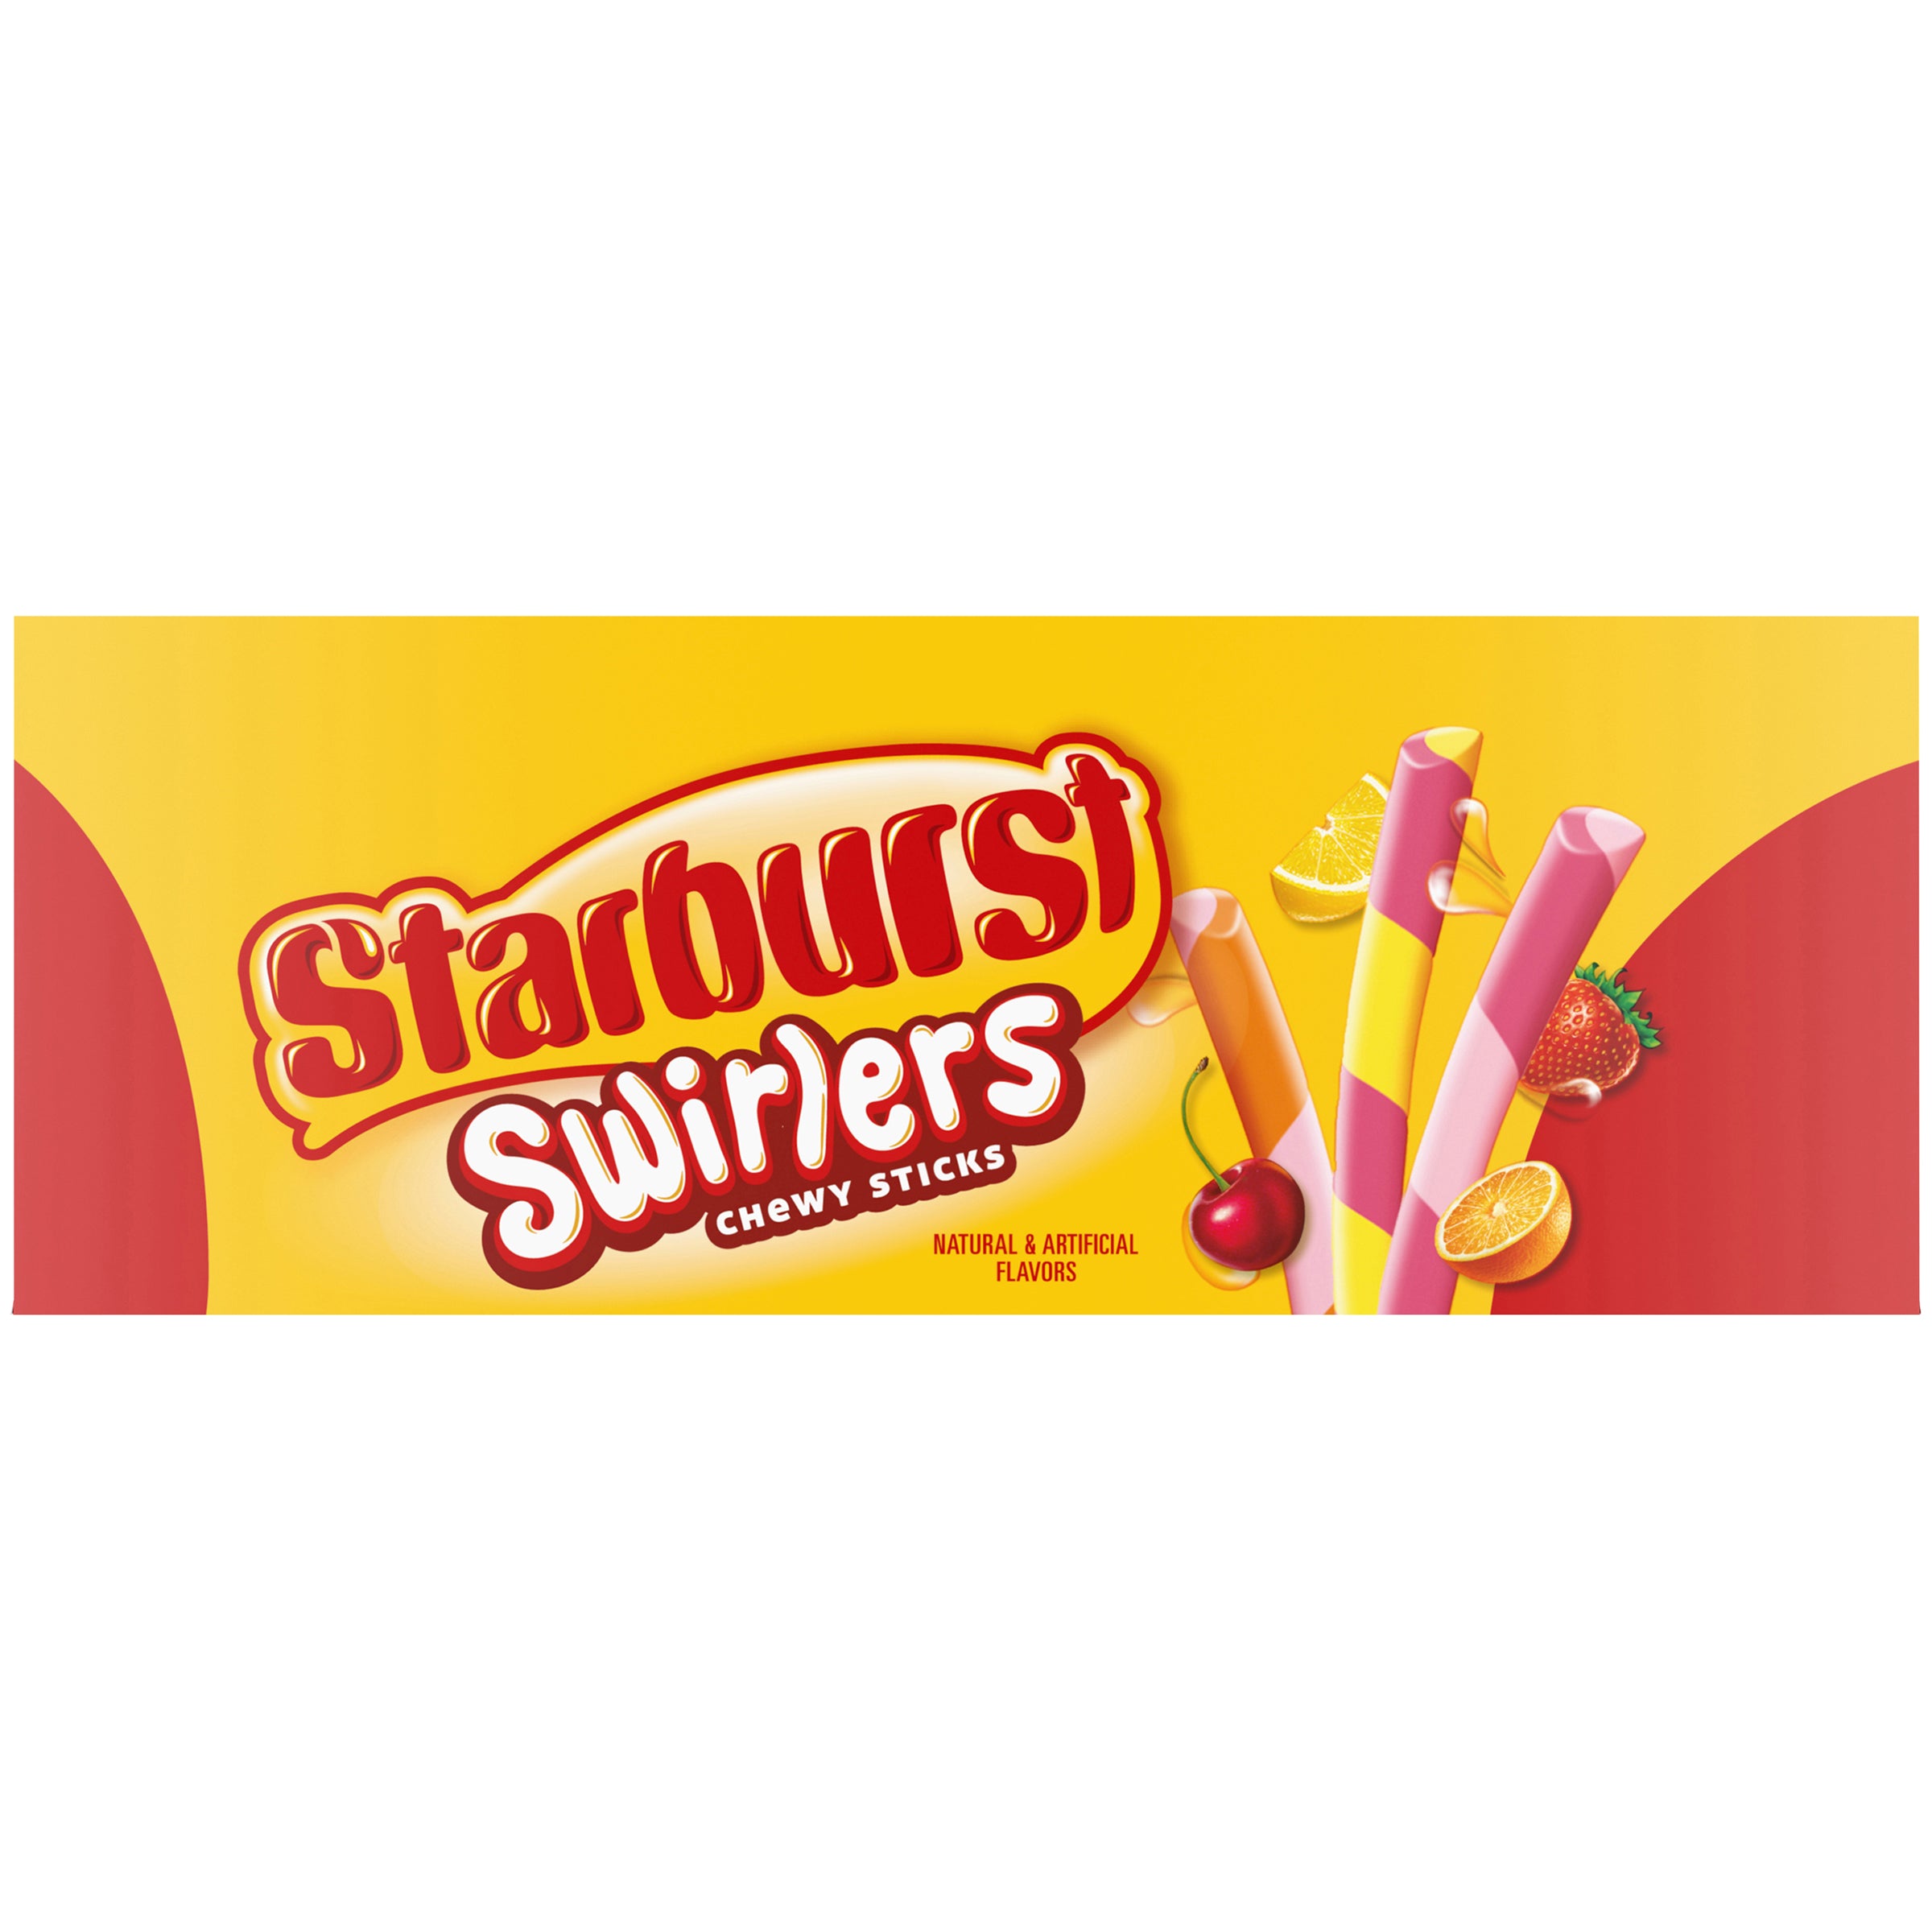 STARBURST SWIRLERS